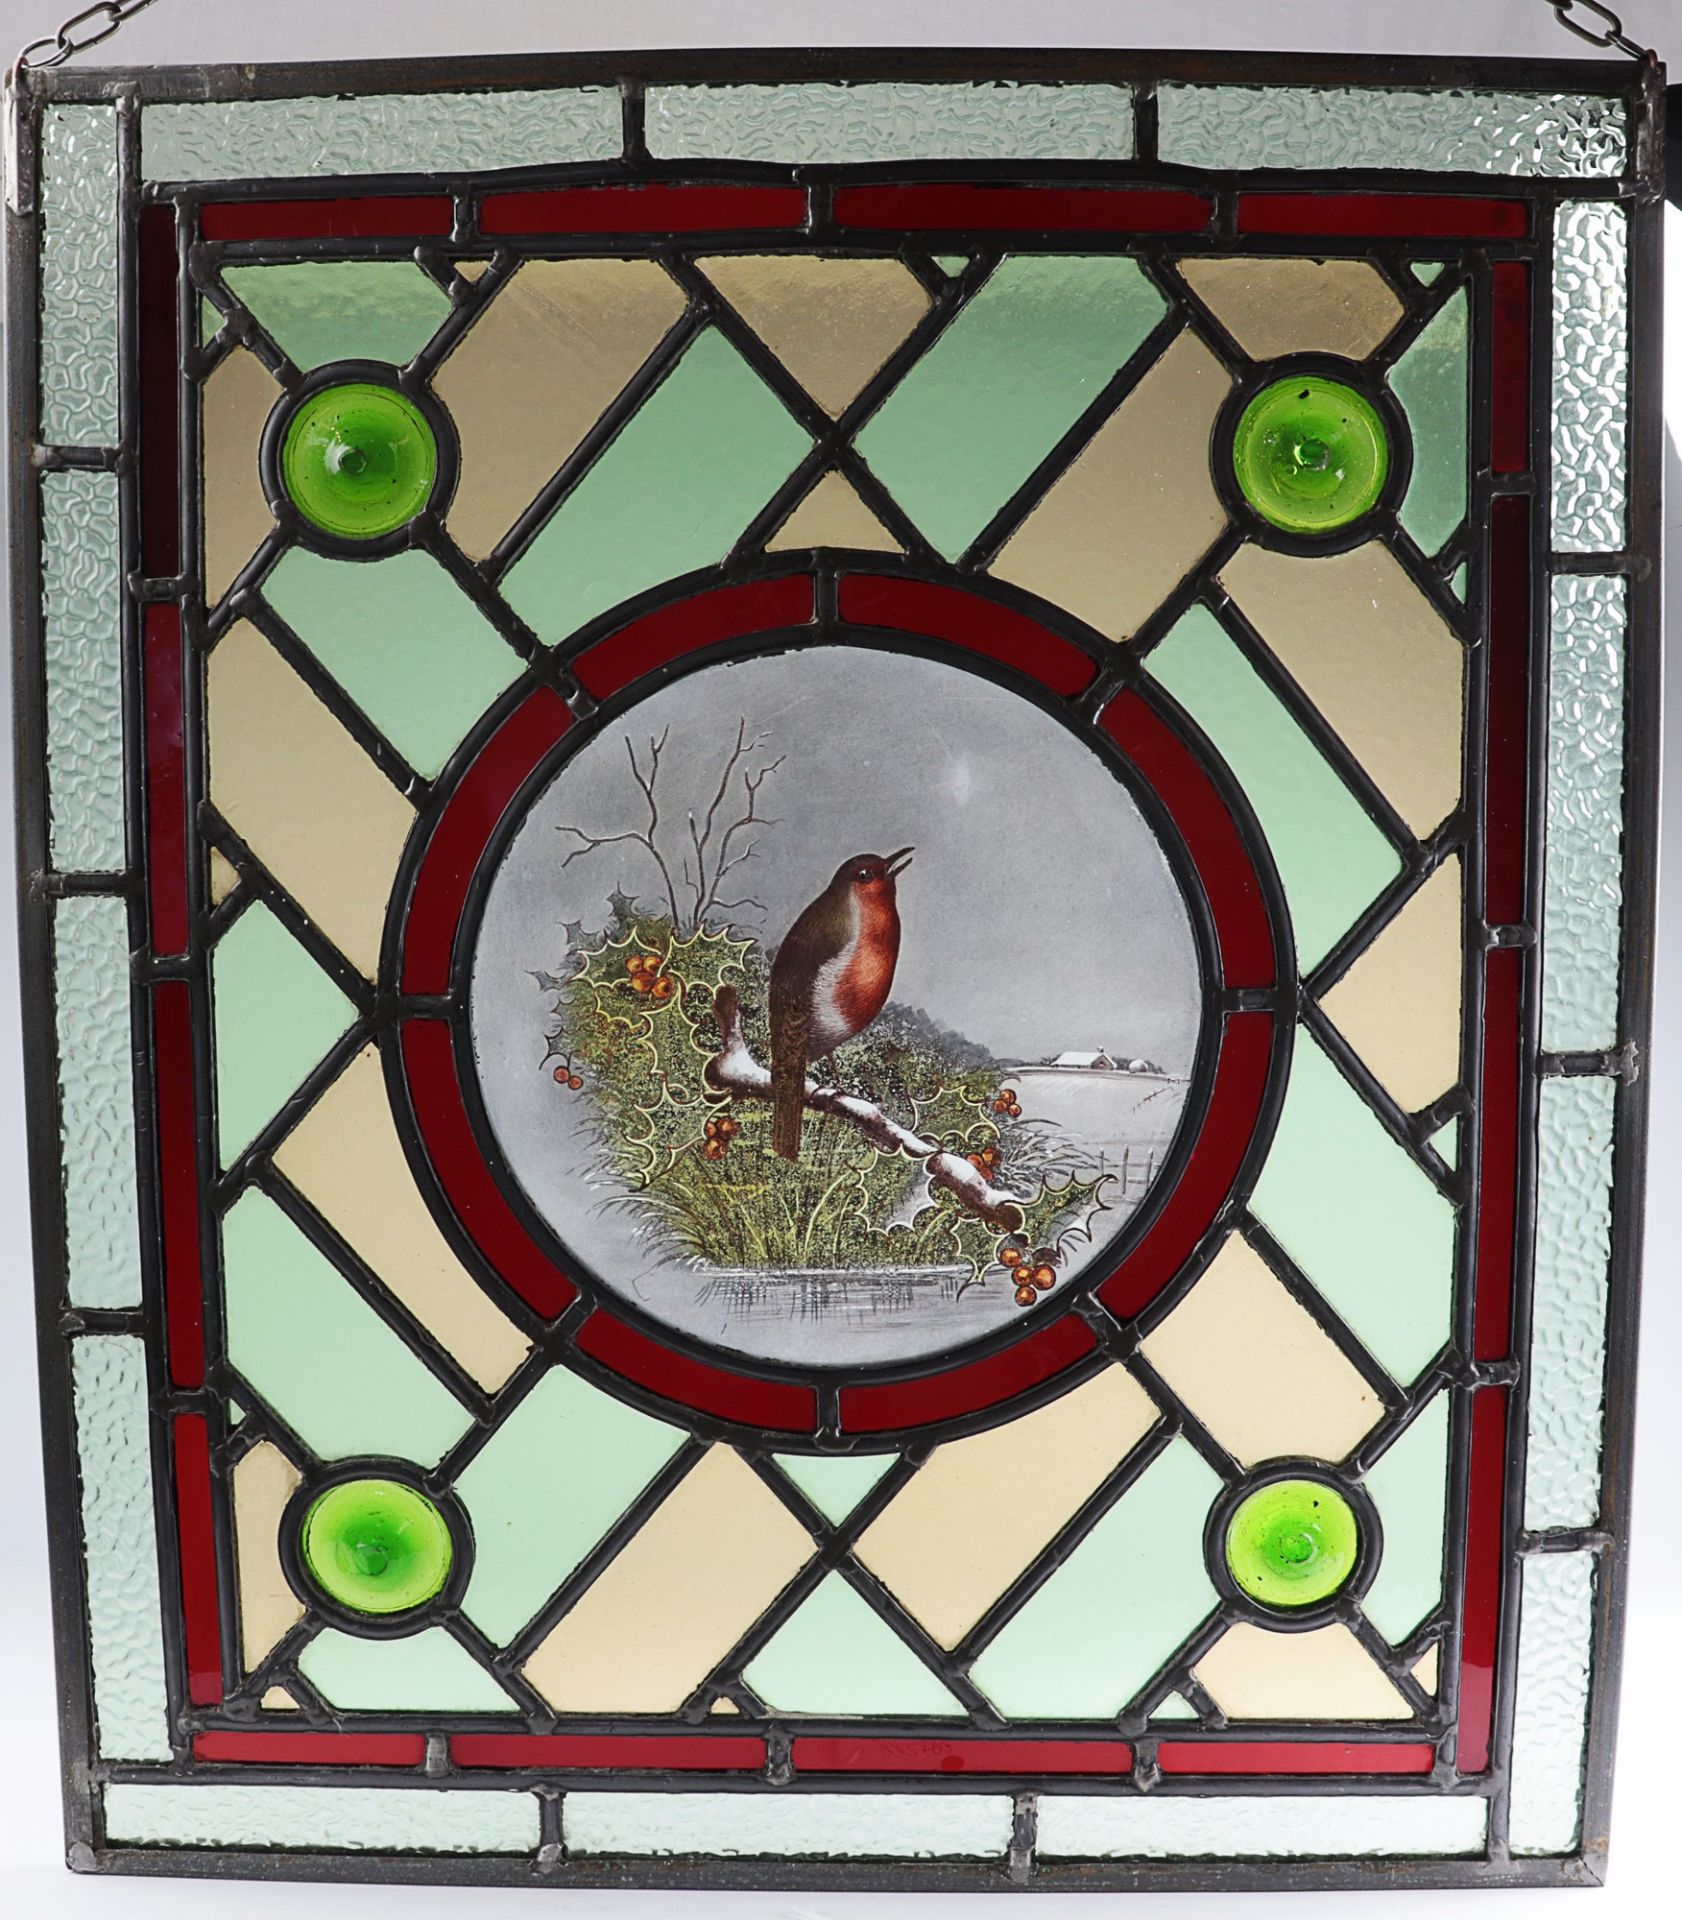 Glasfenster um 1900, farblose u. polychrome Bleiverglasung in rechteckiger Metallrahmung, außen